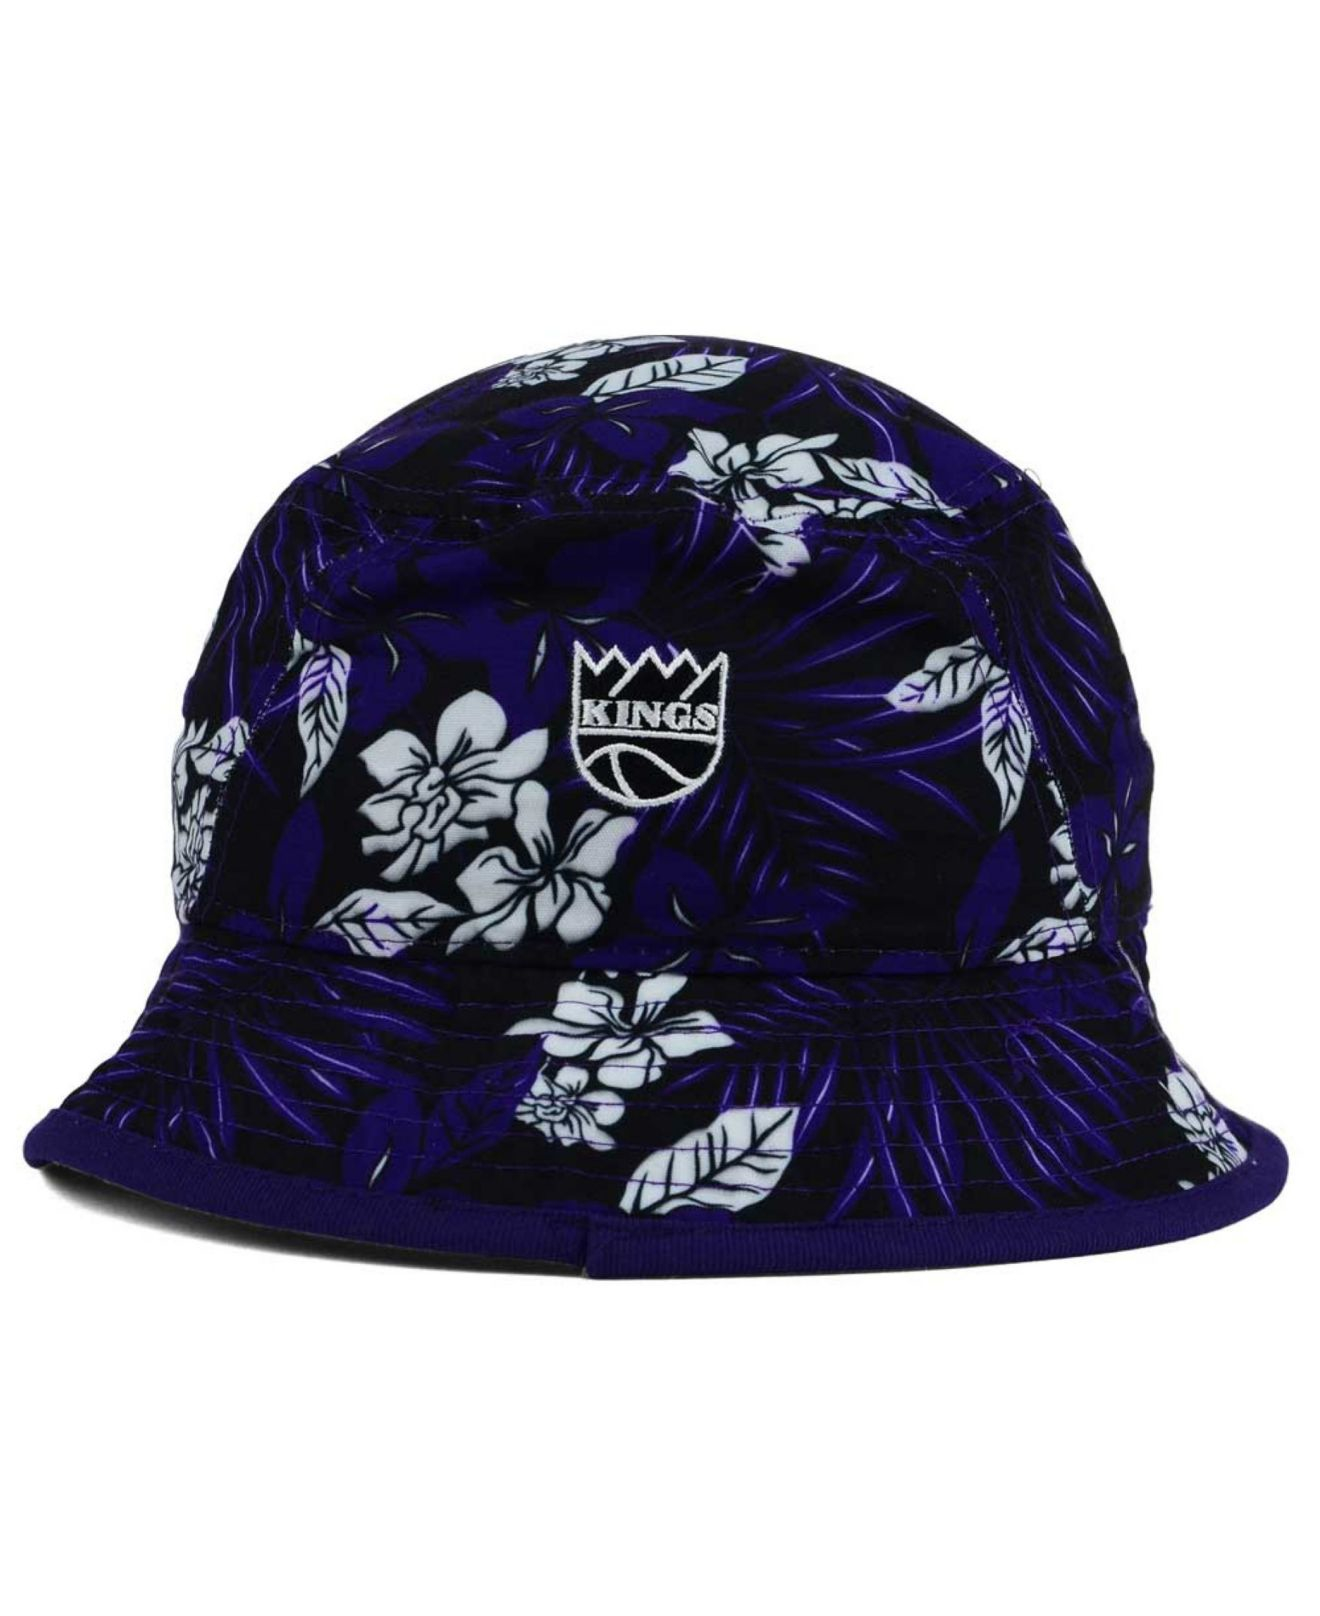 Lyst - Ktz Sacramento Kings Wowie Bucket Hat in Purple for Men